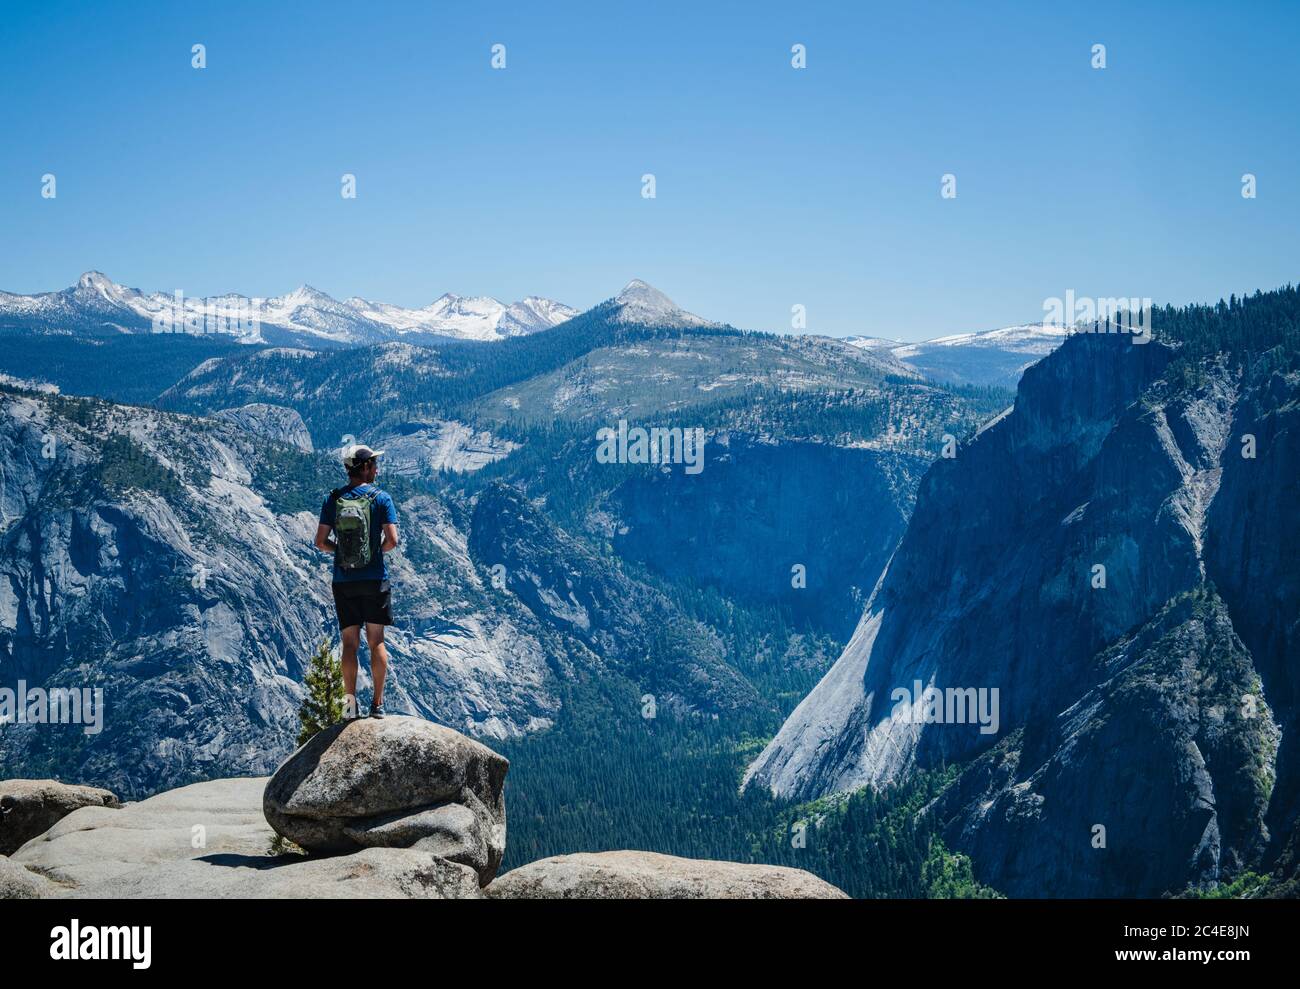 Randonneur surplombant la vallée dans le parc national de Yosemite, comté de Mariposa, Californie, États-Unis Banque D'Images